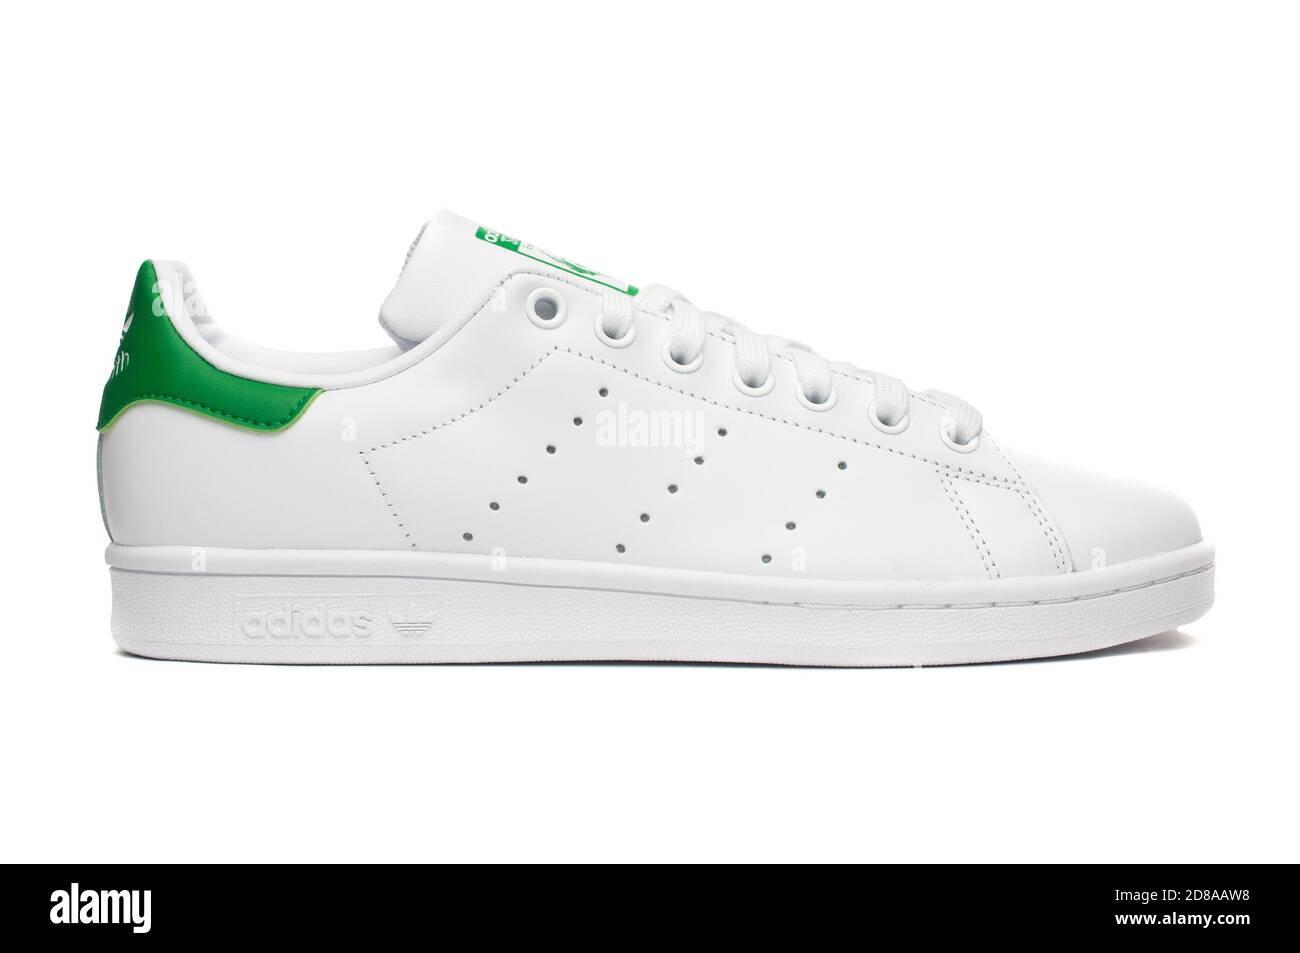 Carrara, Italia - 28 de octubre de 2020 - Adidas Stan Smith sneaker clásico (blanco y verde) aislado sobre fondo blanco de stock - Alamy